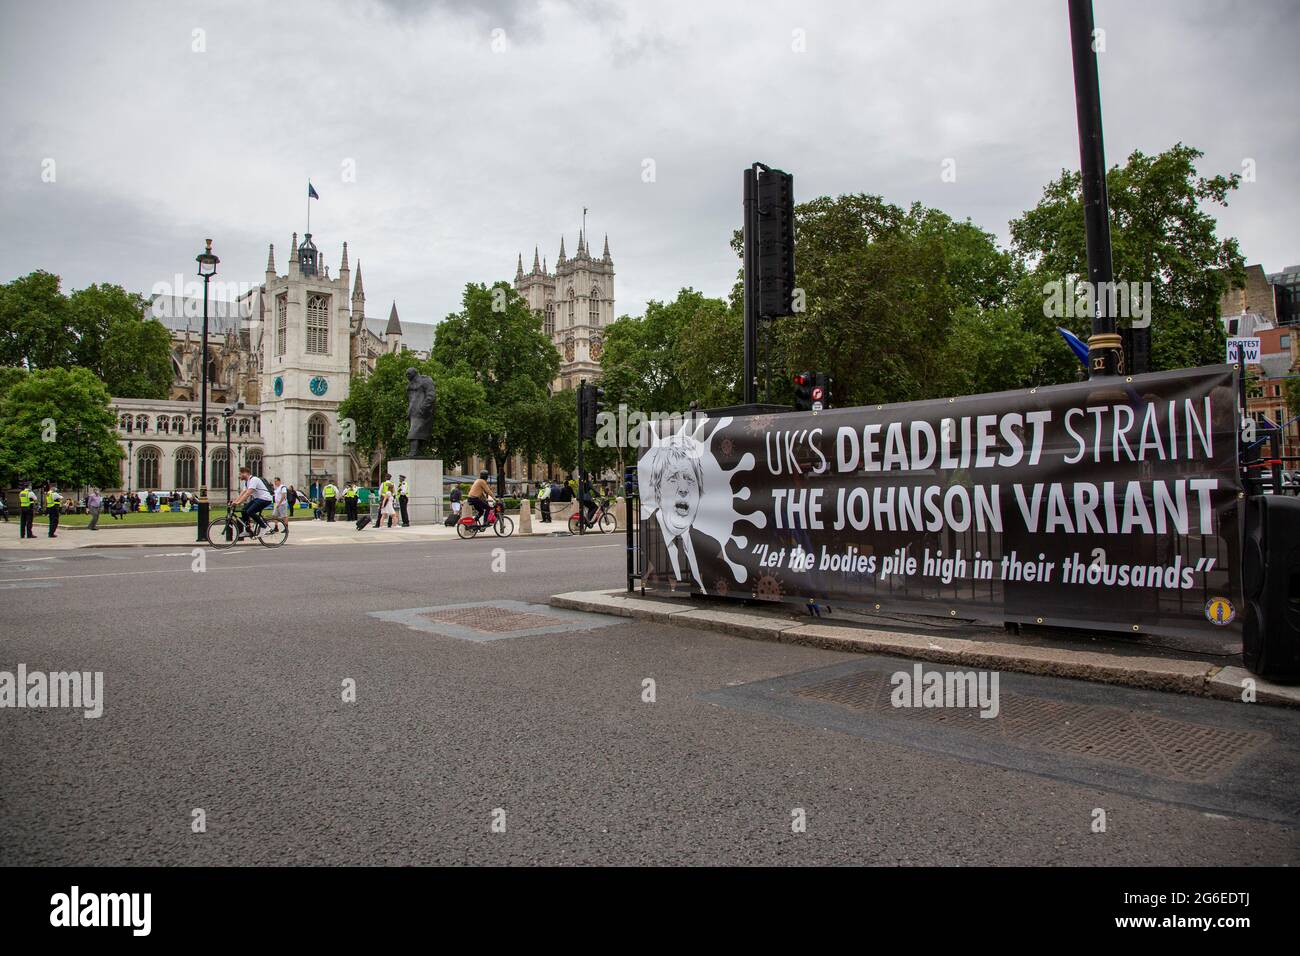 "Il ceppo più letale del Regno Unito - la variante Johnson" - i manifestanti del gruppo Sodem Action guidato dall'attivista pro-UE Steve Bray hanno organizzato una protesta su Whiteh Foto Stock